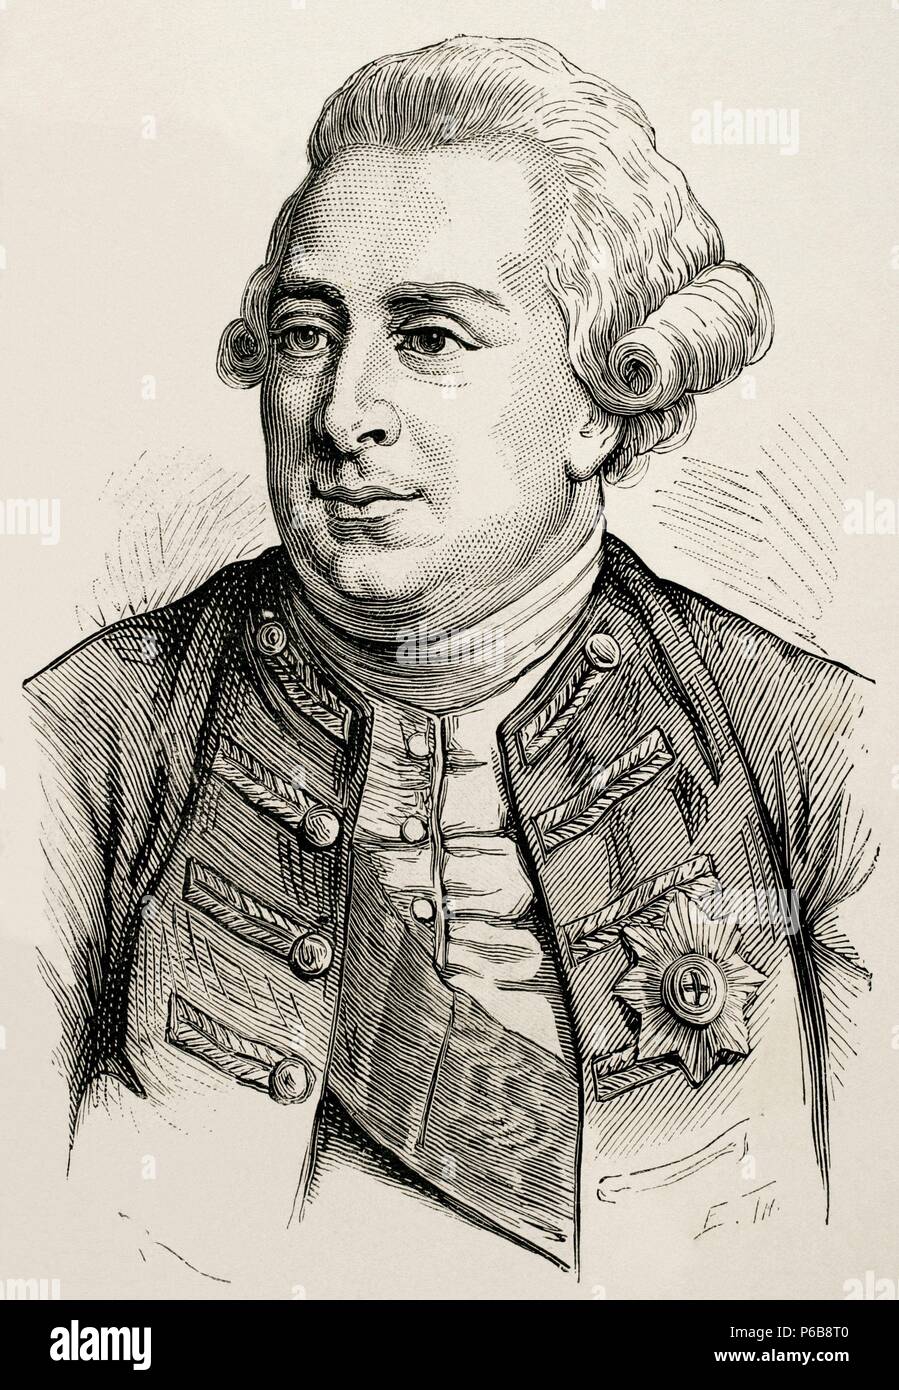 George III (1738-1820). König von Großbritannien und Irland, später König des Vereinigten Königreichs und von Hannover. Gravur "nuestro Siglo", 1883. Stockfoto